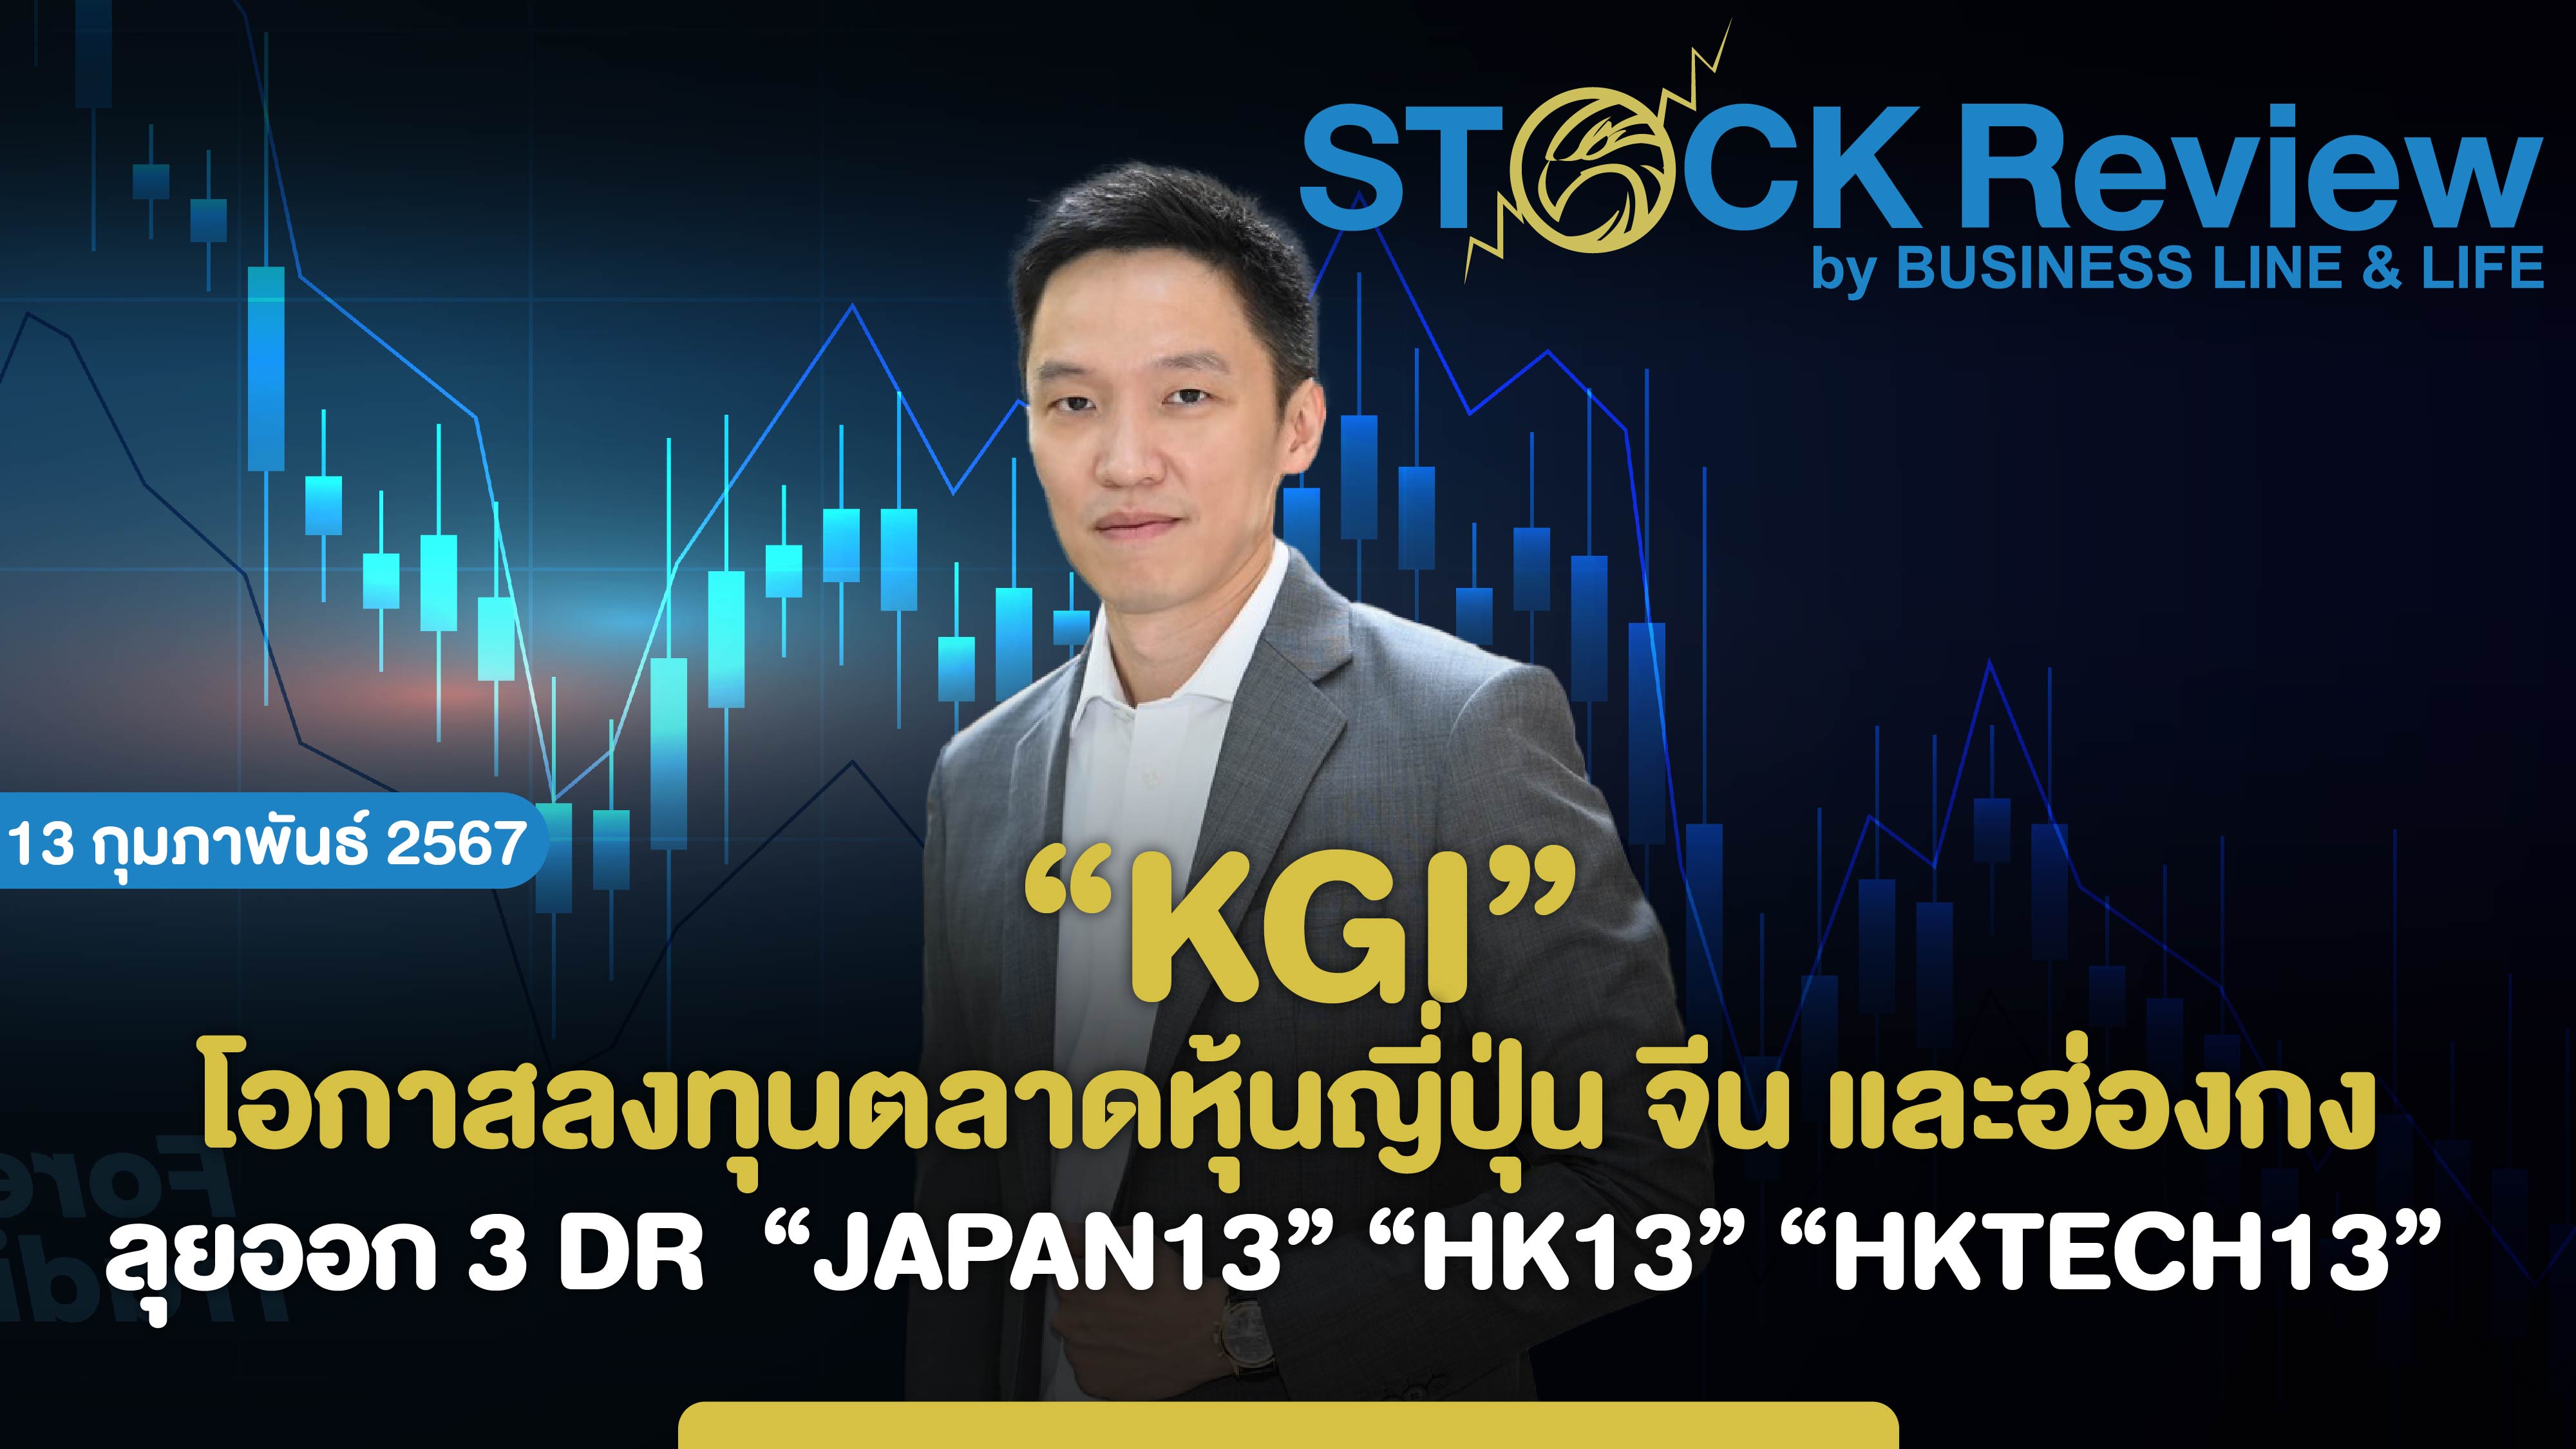 KGI เห็นโอกาสลงทุนตลาดหุ้นญี่ปุ่น จีน และฮ่องกง ออก DR  “JAPAN13” “HK13” “HKTECH13”